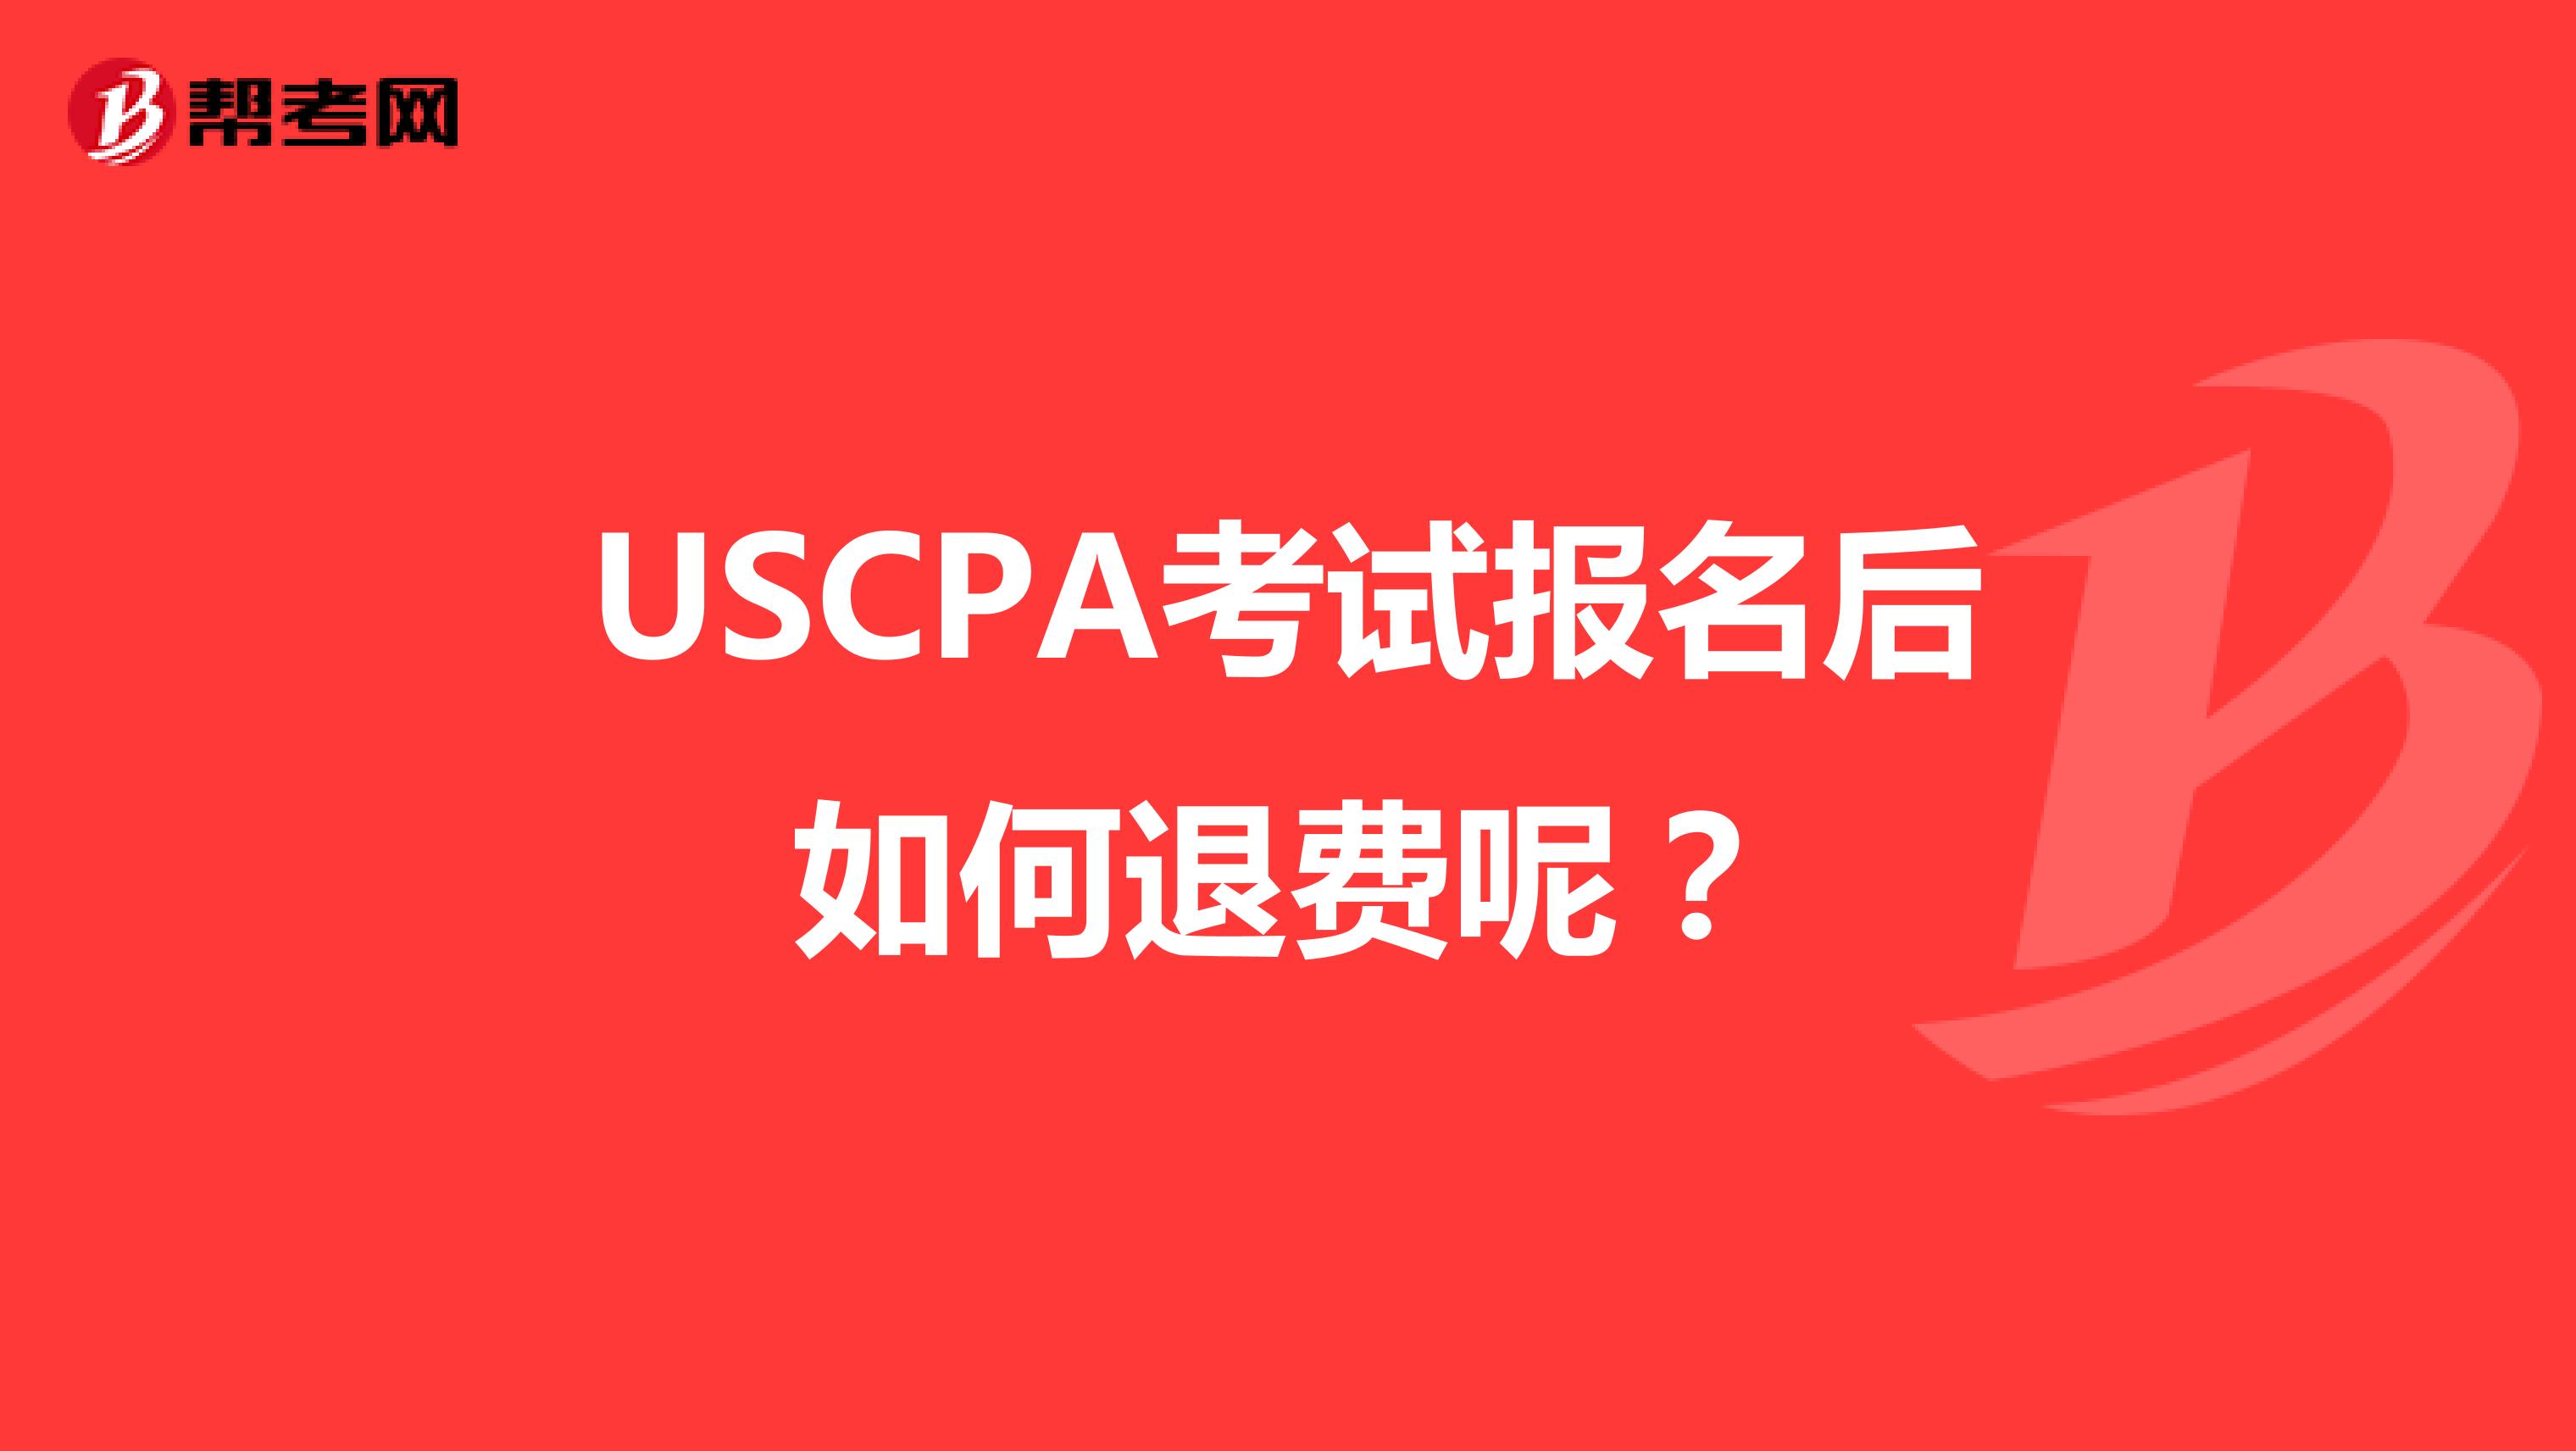 USCPA考试报名后如何退费呢？